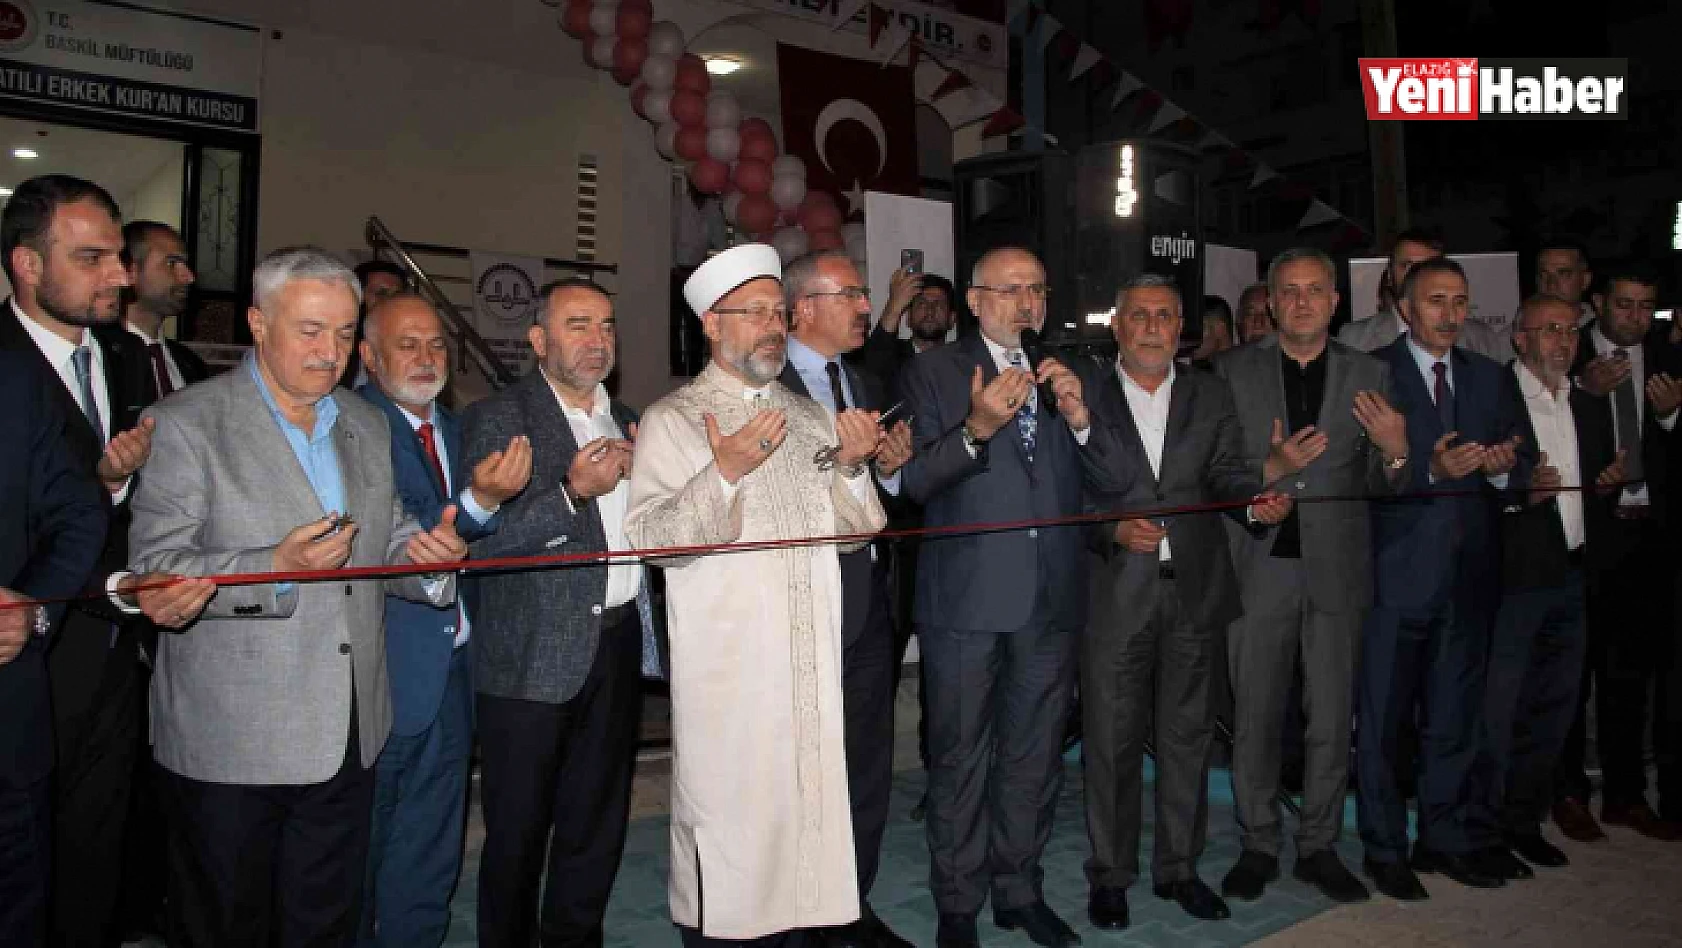 Diyanet İşleri Başkanı Erbaş, Elazığ'da 65 öğrenci kapasiteli Kur'an kursunun açılışına katıldı